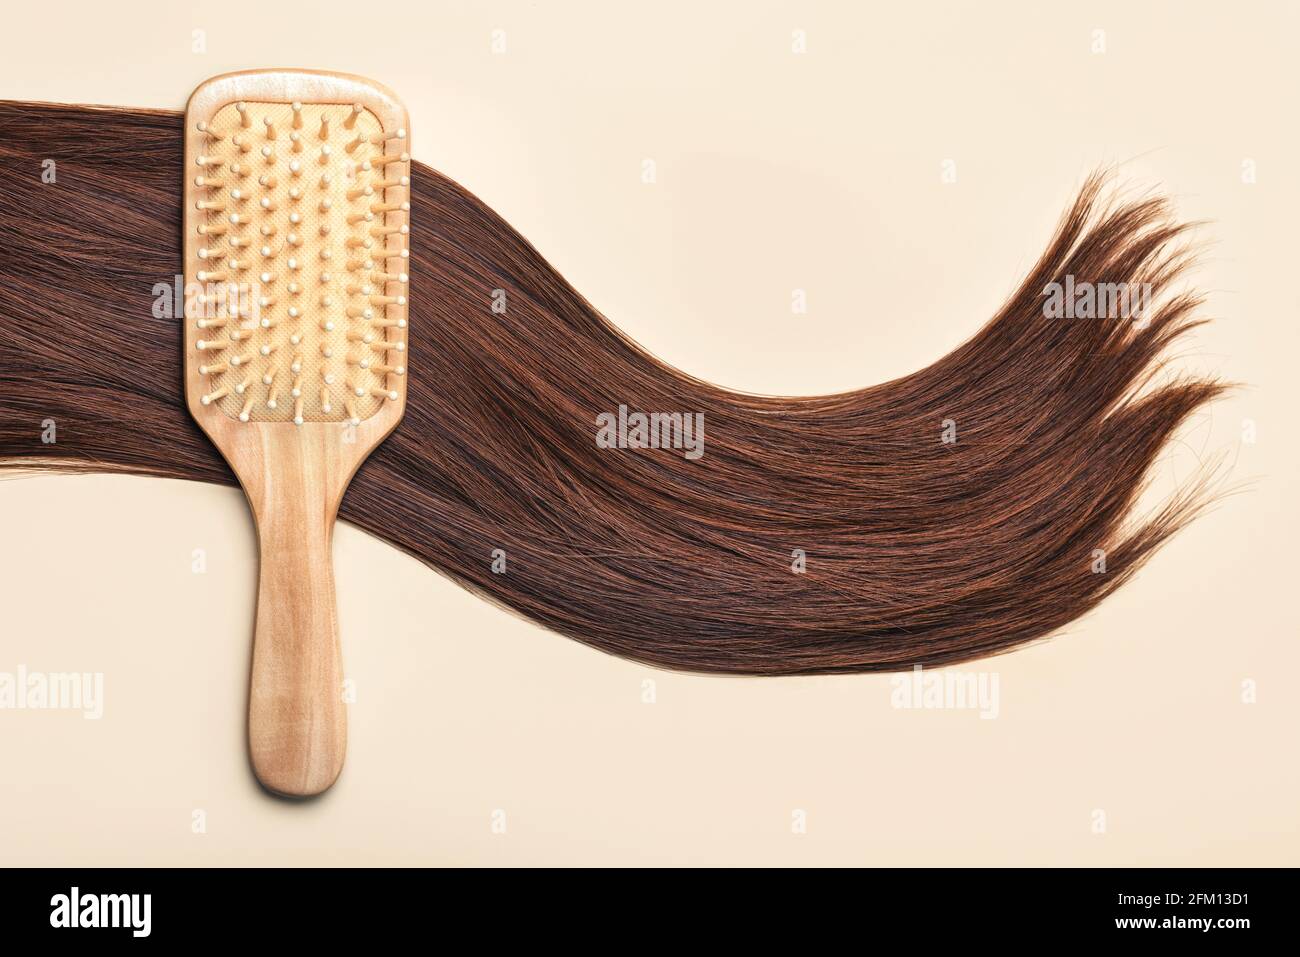 Cepillo de pelo con cierre de pelo marrón femenino sobre un beige Background.Peluquería salón y peinados concepto Foto de stock